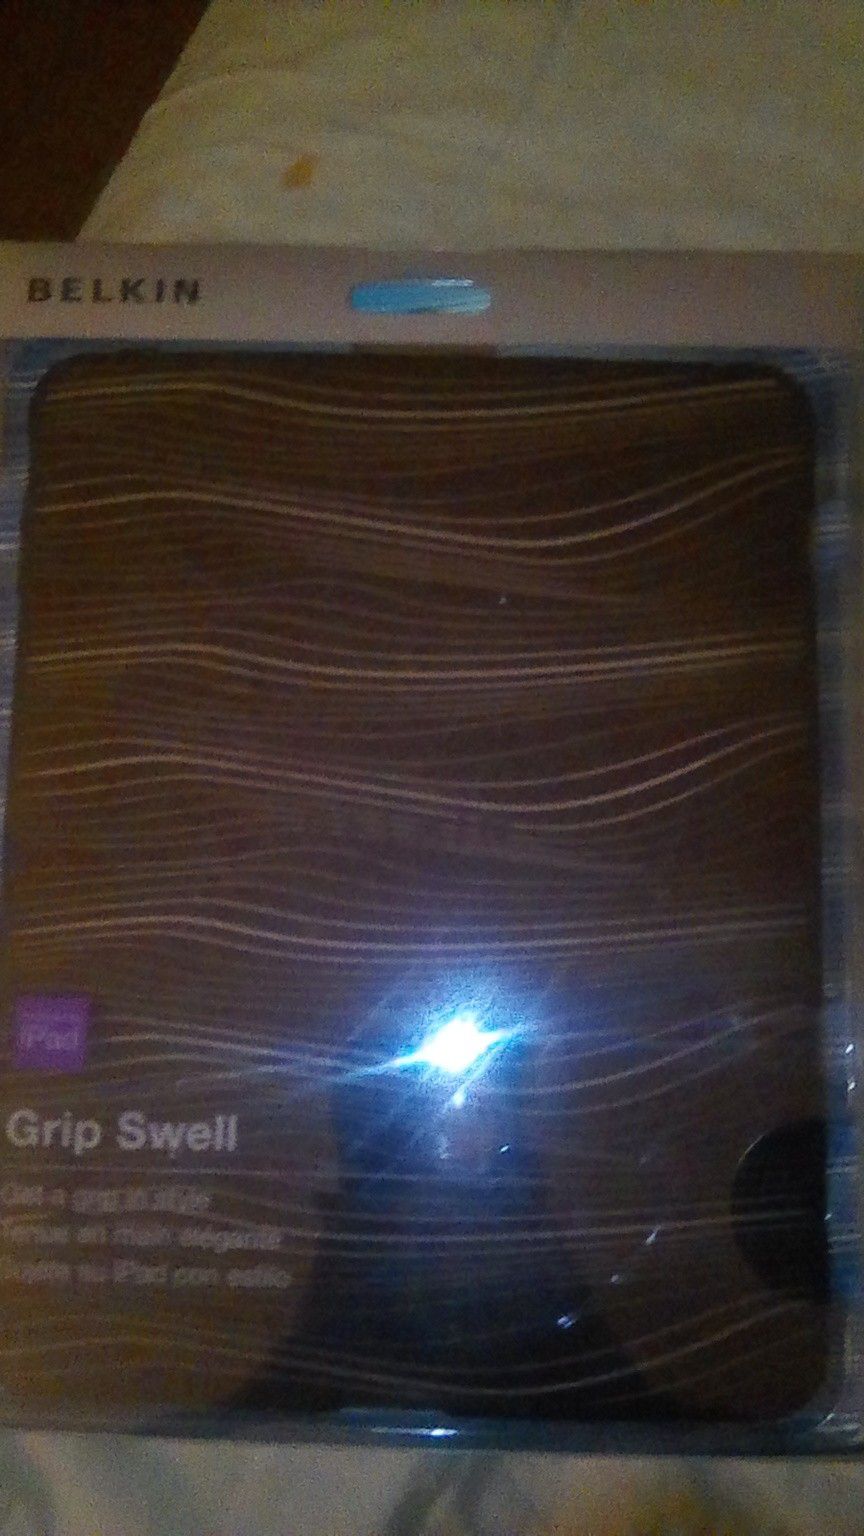 Belkin grip swell iPad case